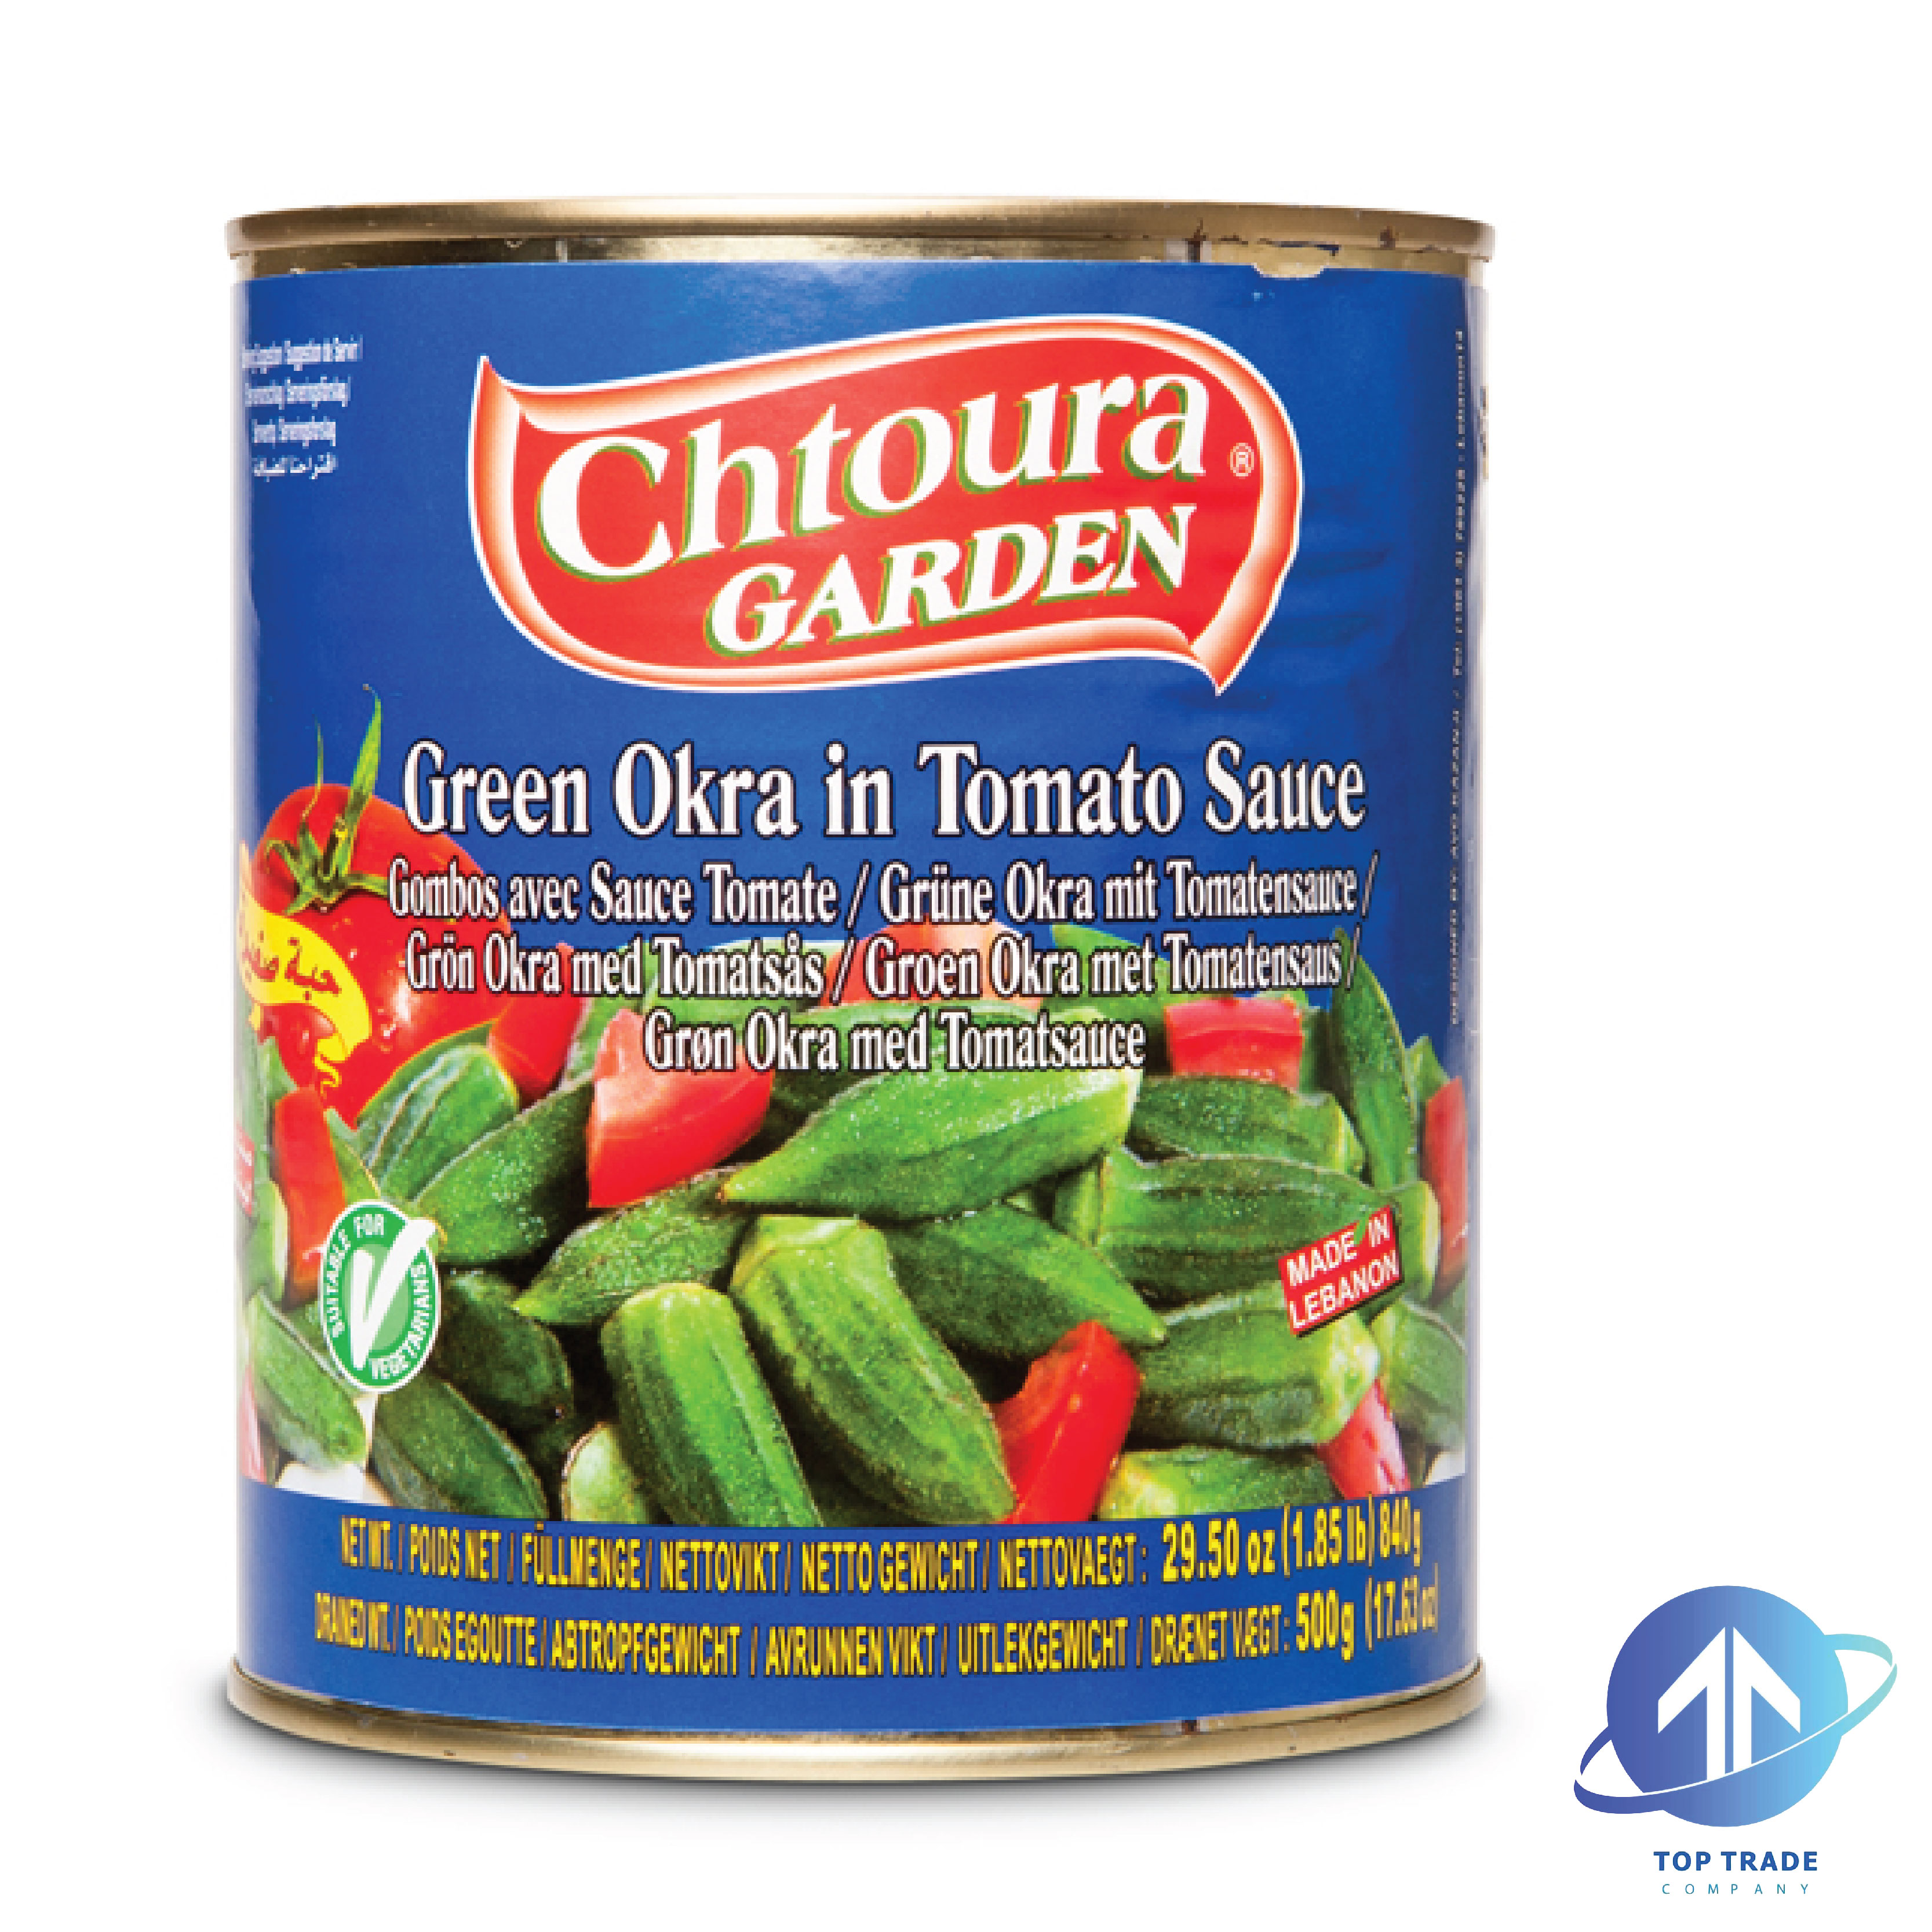 Chtoura Garden Green Okra in Tomato Sauce 840gr